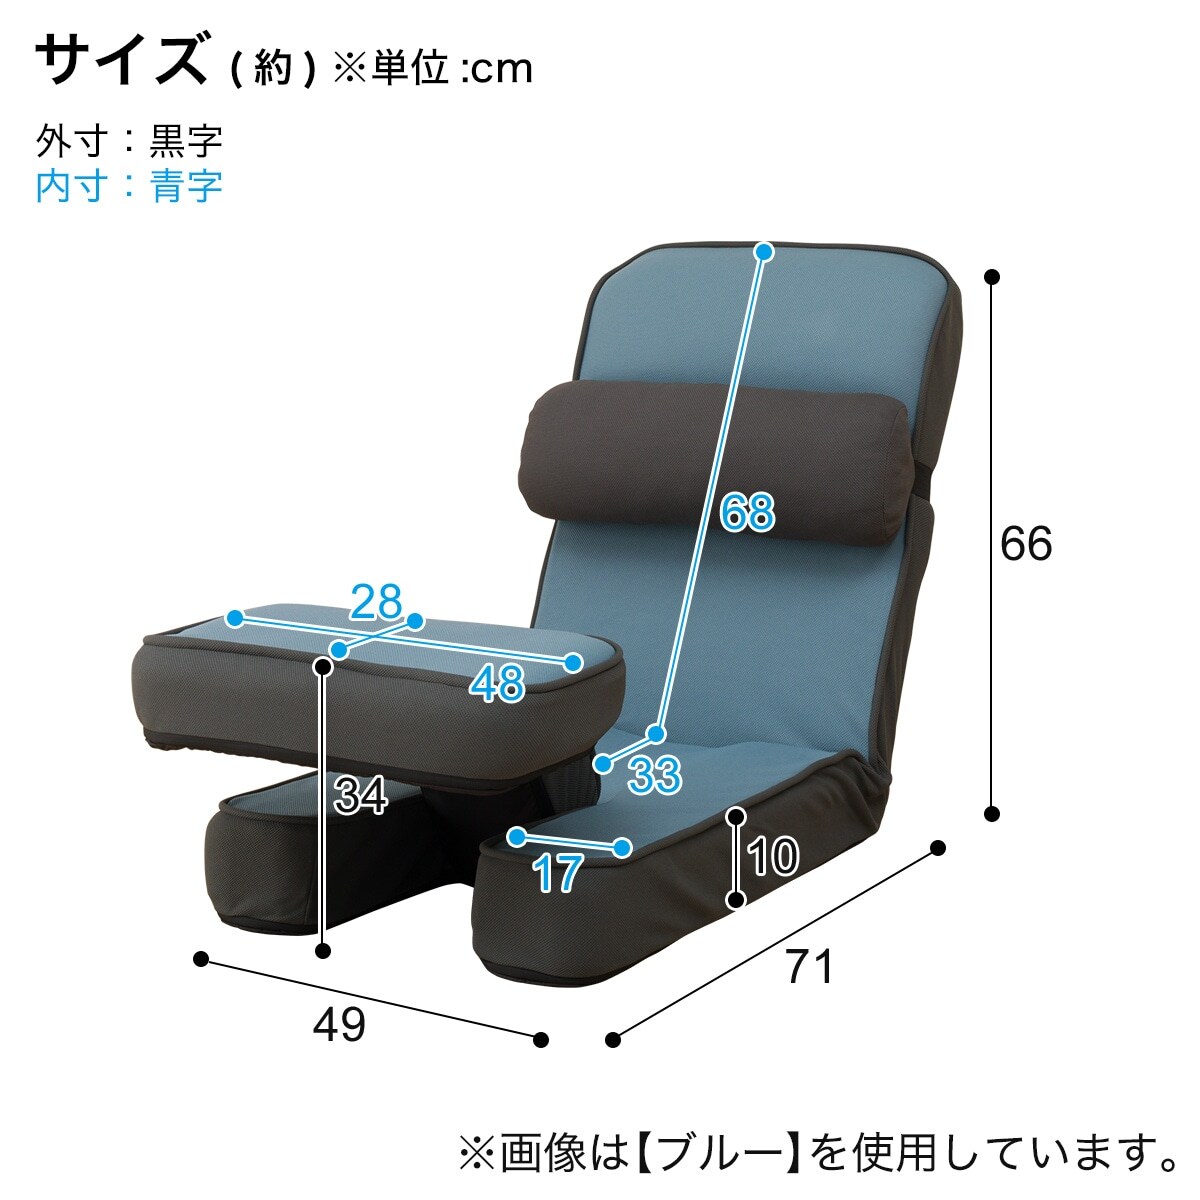 ゲーミング座椅子通販 ニトリネット【公式】 家具・インテリア通販